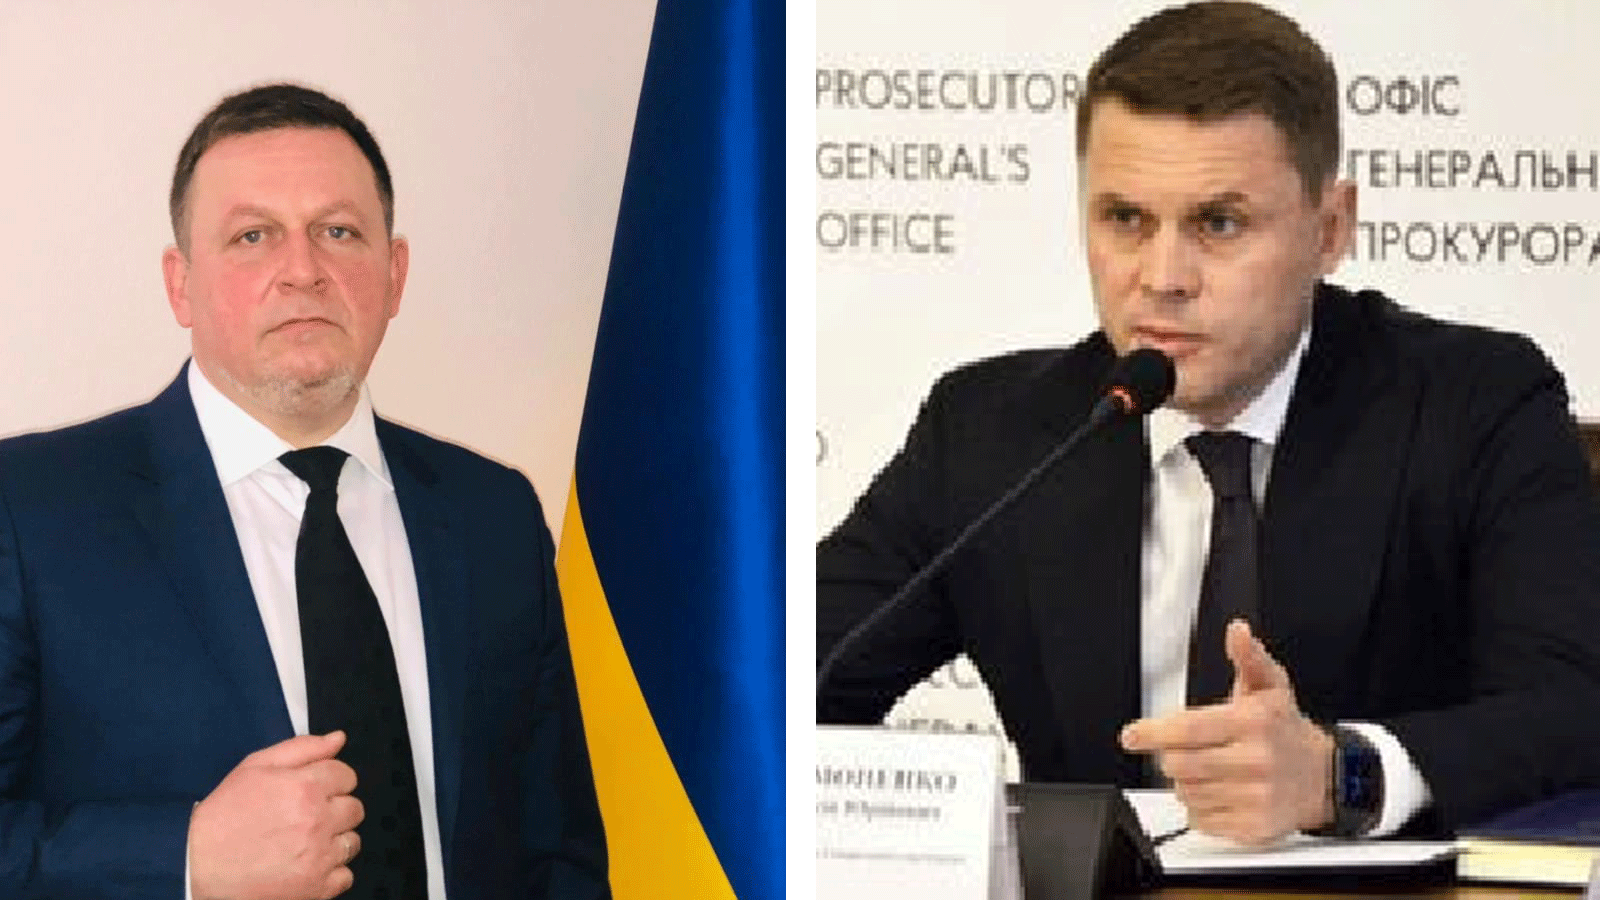 نائب وزير الدفاع فياتشيسلاف شابوفالوف ونائب المدعي العام أوليكسي سيمونينكو